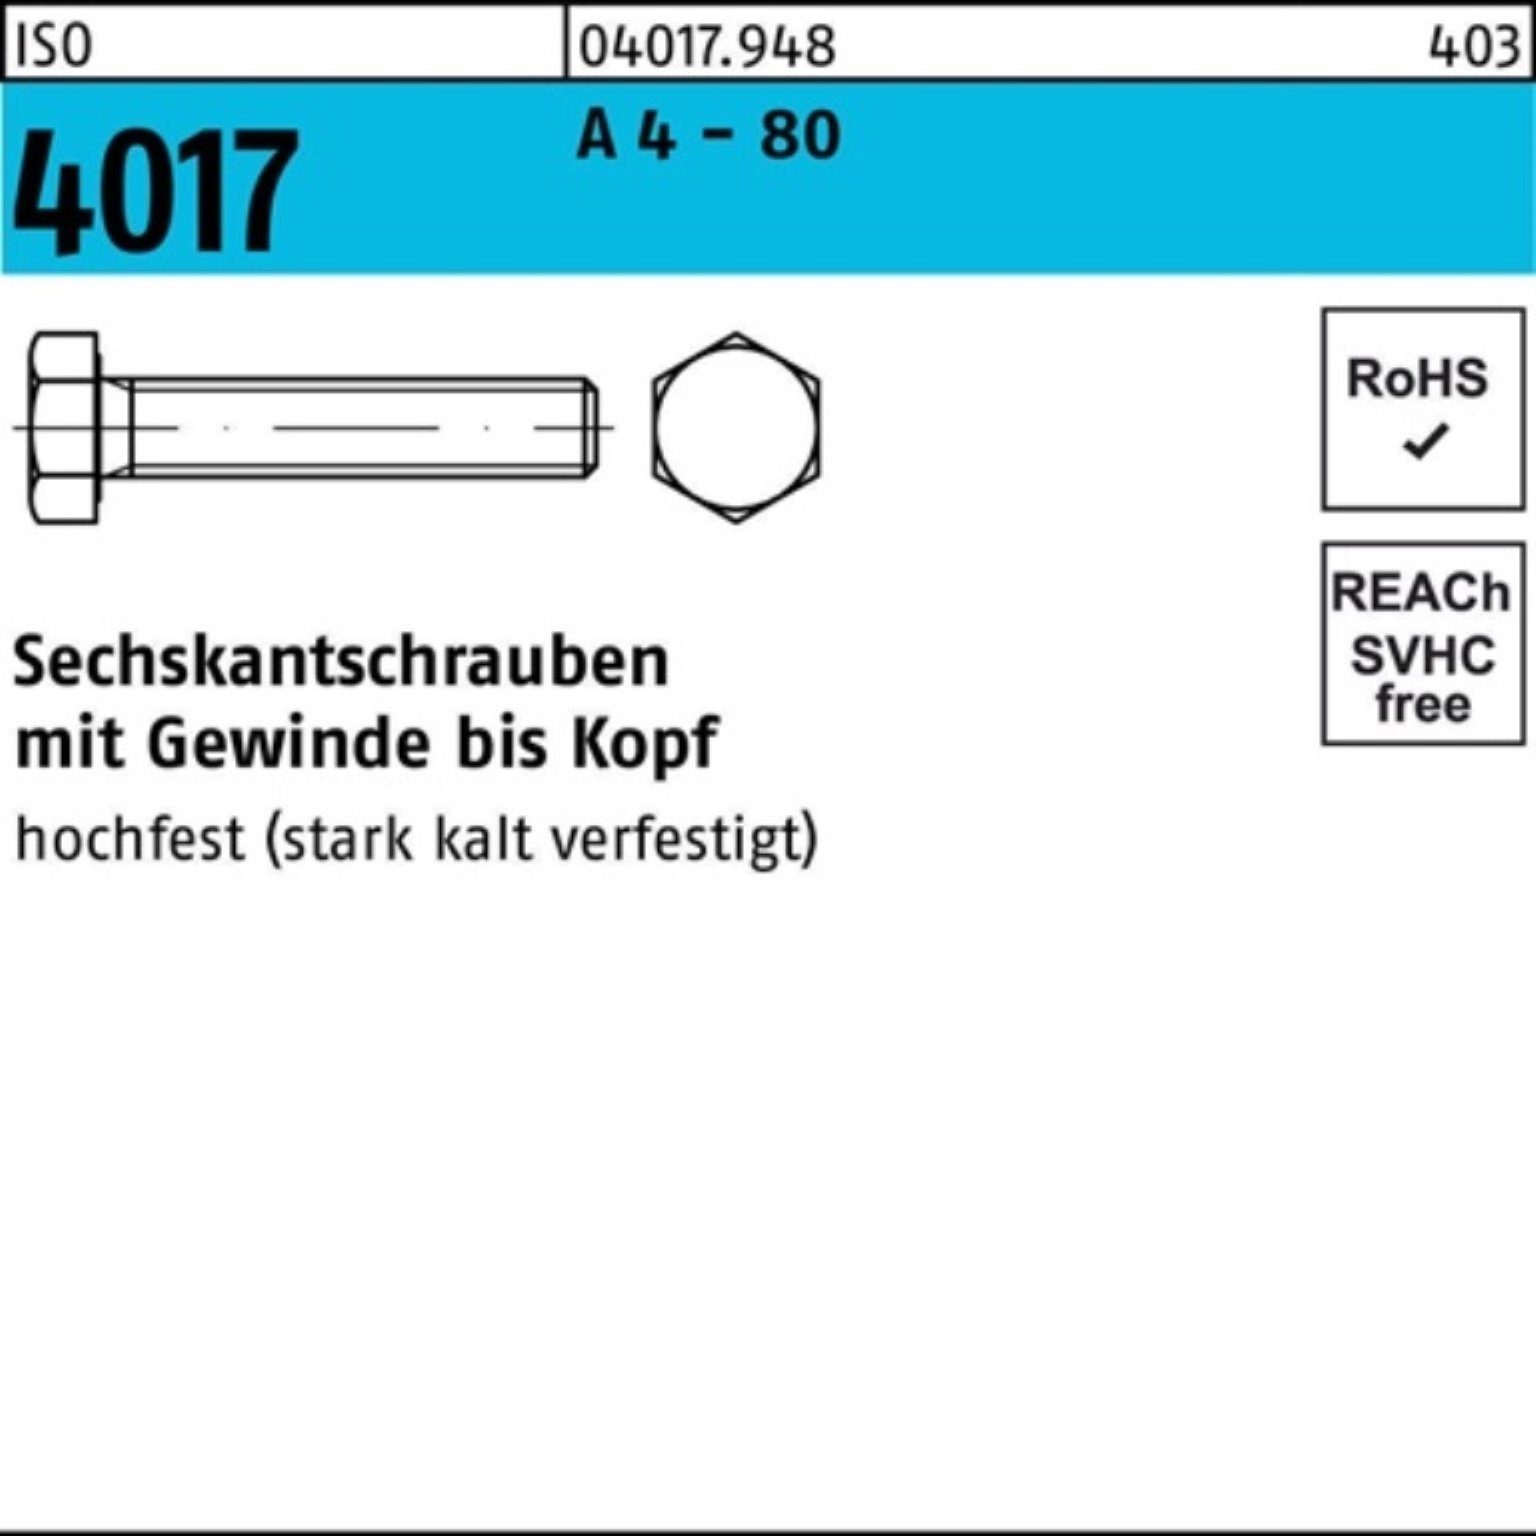 Sechskantschraube A Bufab 45 Sechskantschraube 80 - ISO 4 25 VG Stück 4017 100er M20x Pack IS